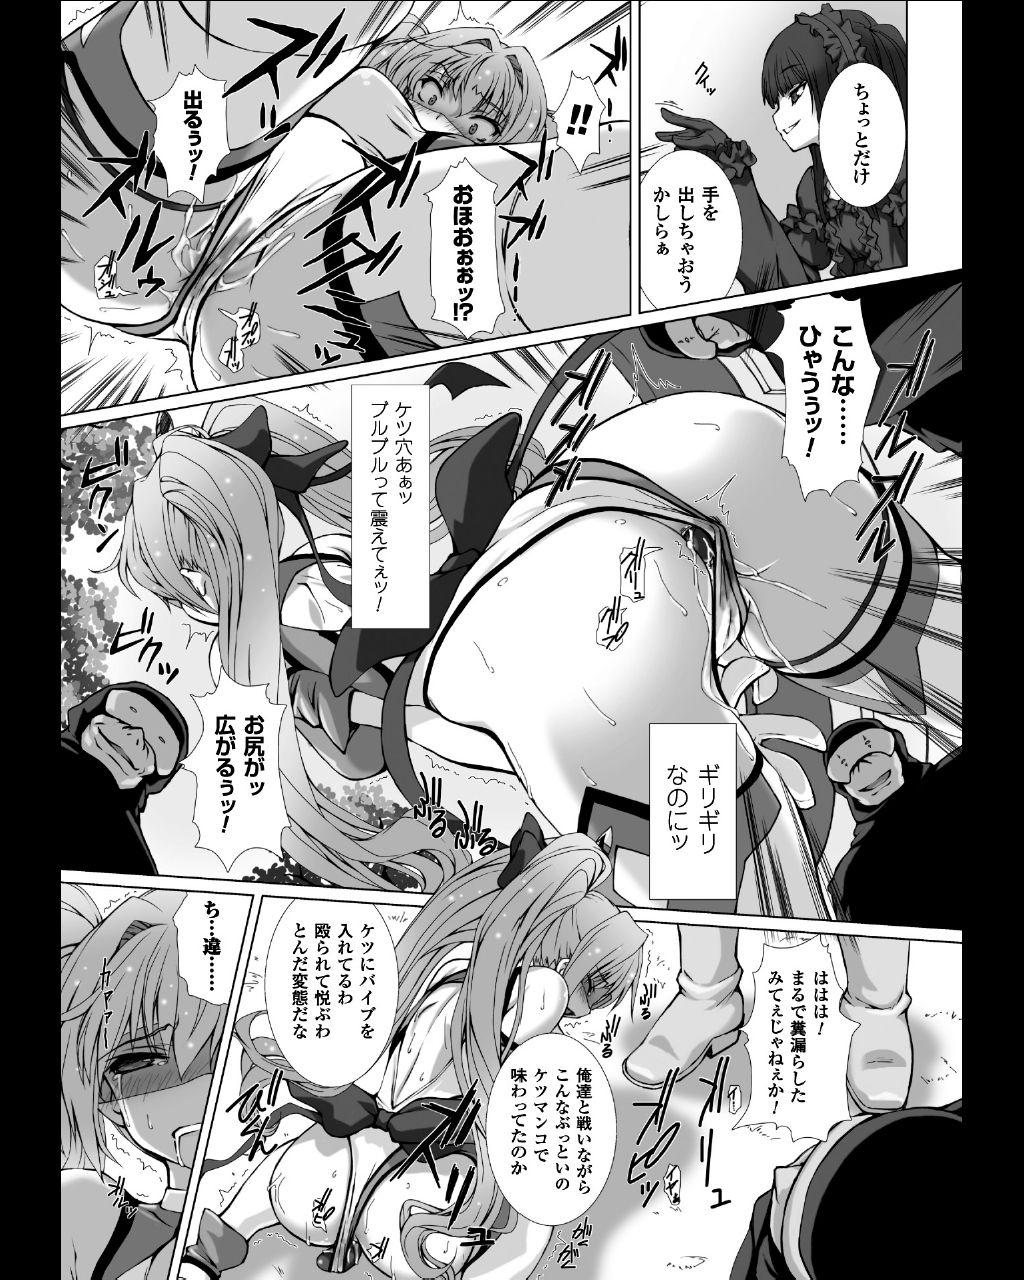 Seigi no Heroine Kangoku File Vol. 11 17